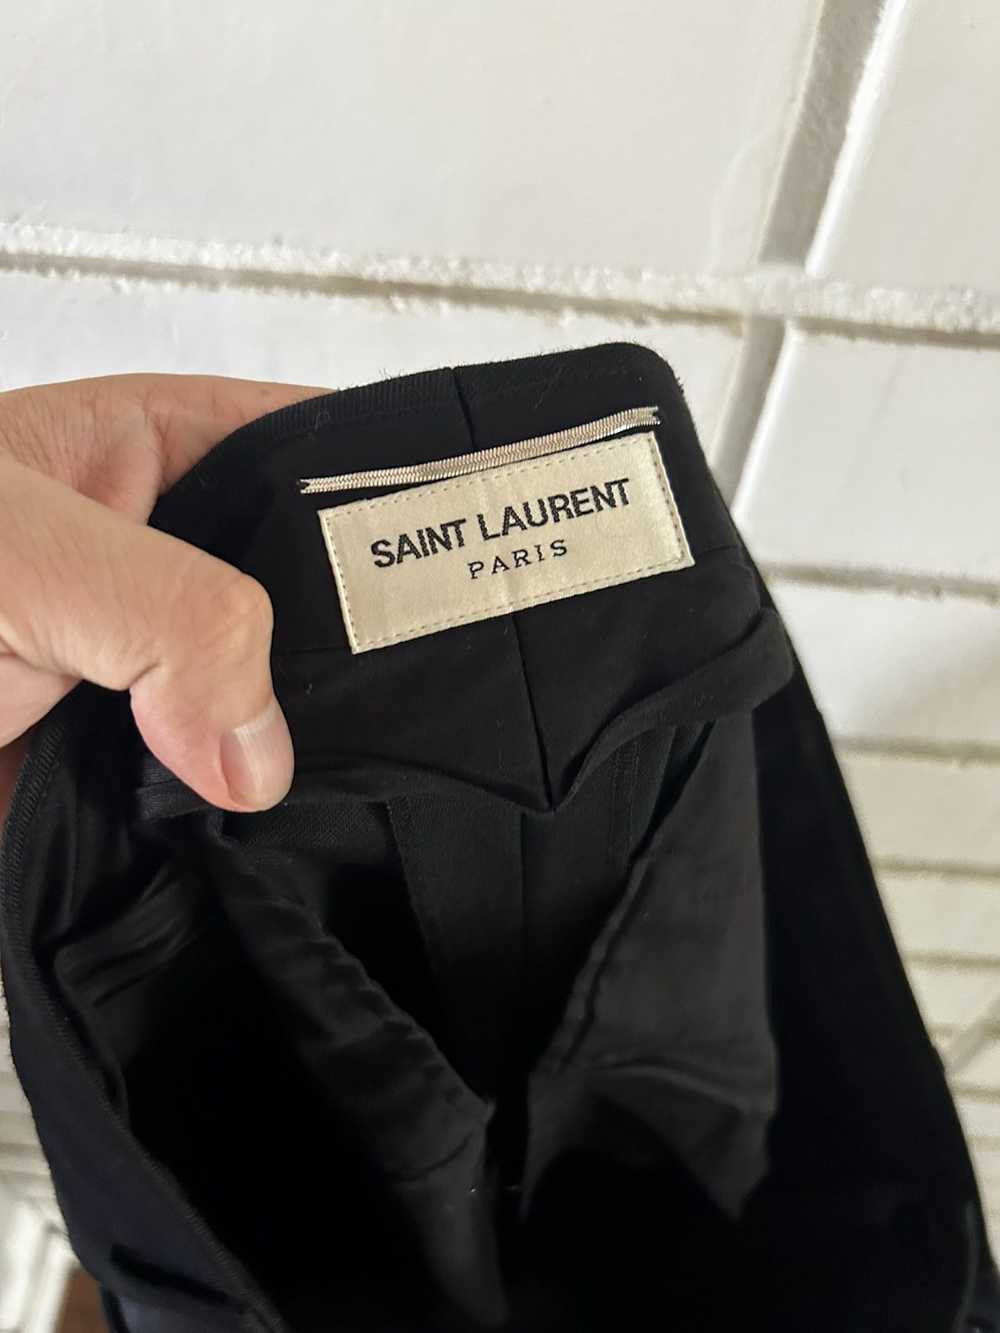 Saint Laurent Paris Saint Laurent Trousers (sz 50) - image 3